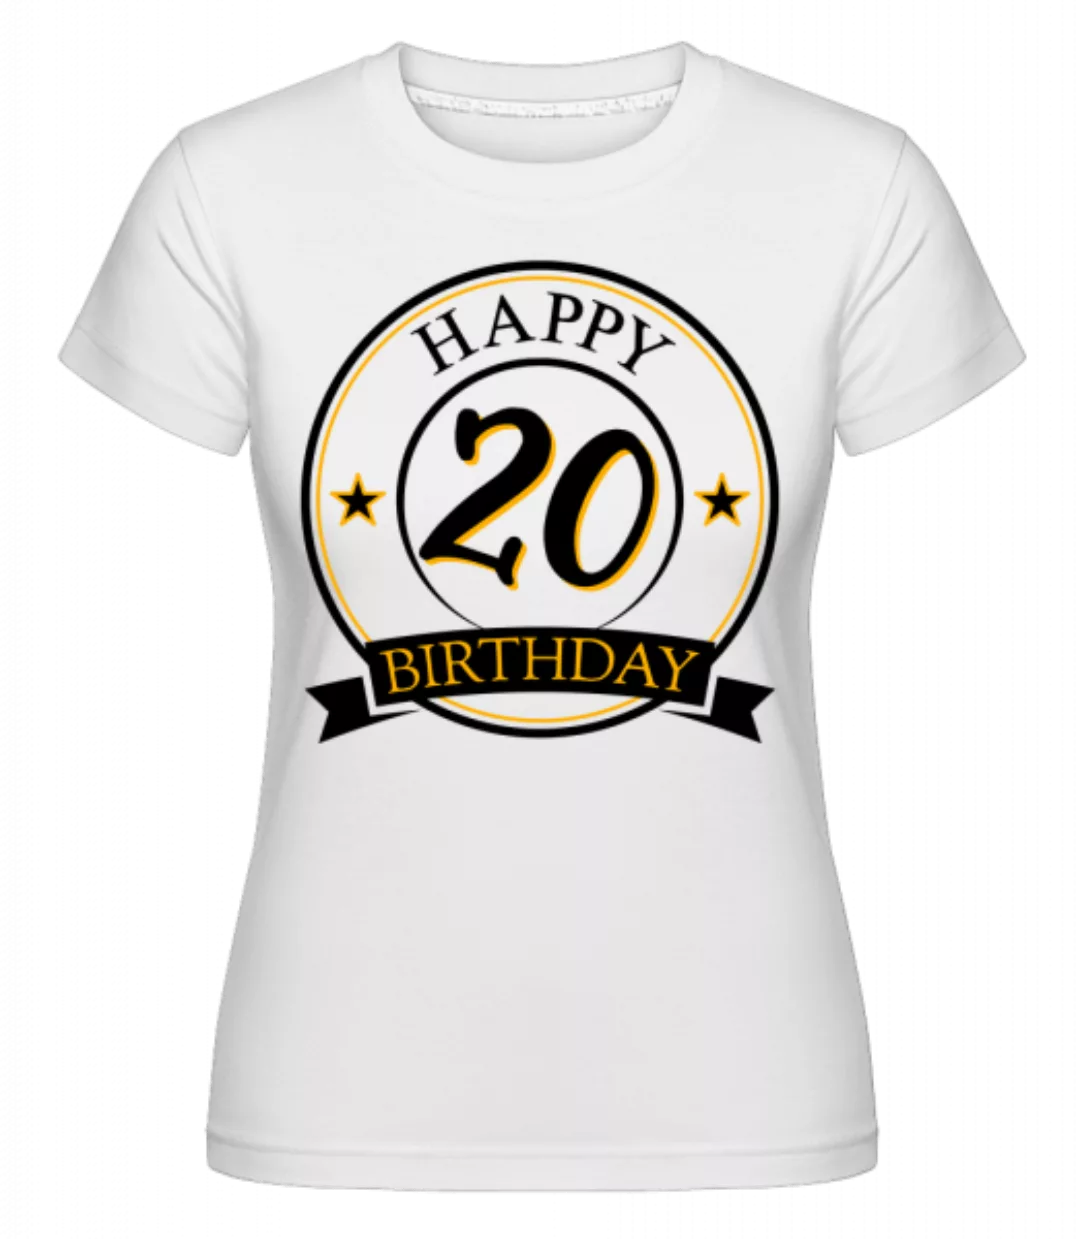 Happy Birthday 20 · Shirtinator Frauen T-Shirt günstig online kaufen